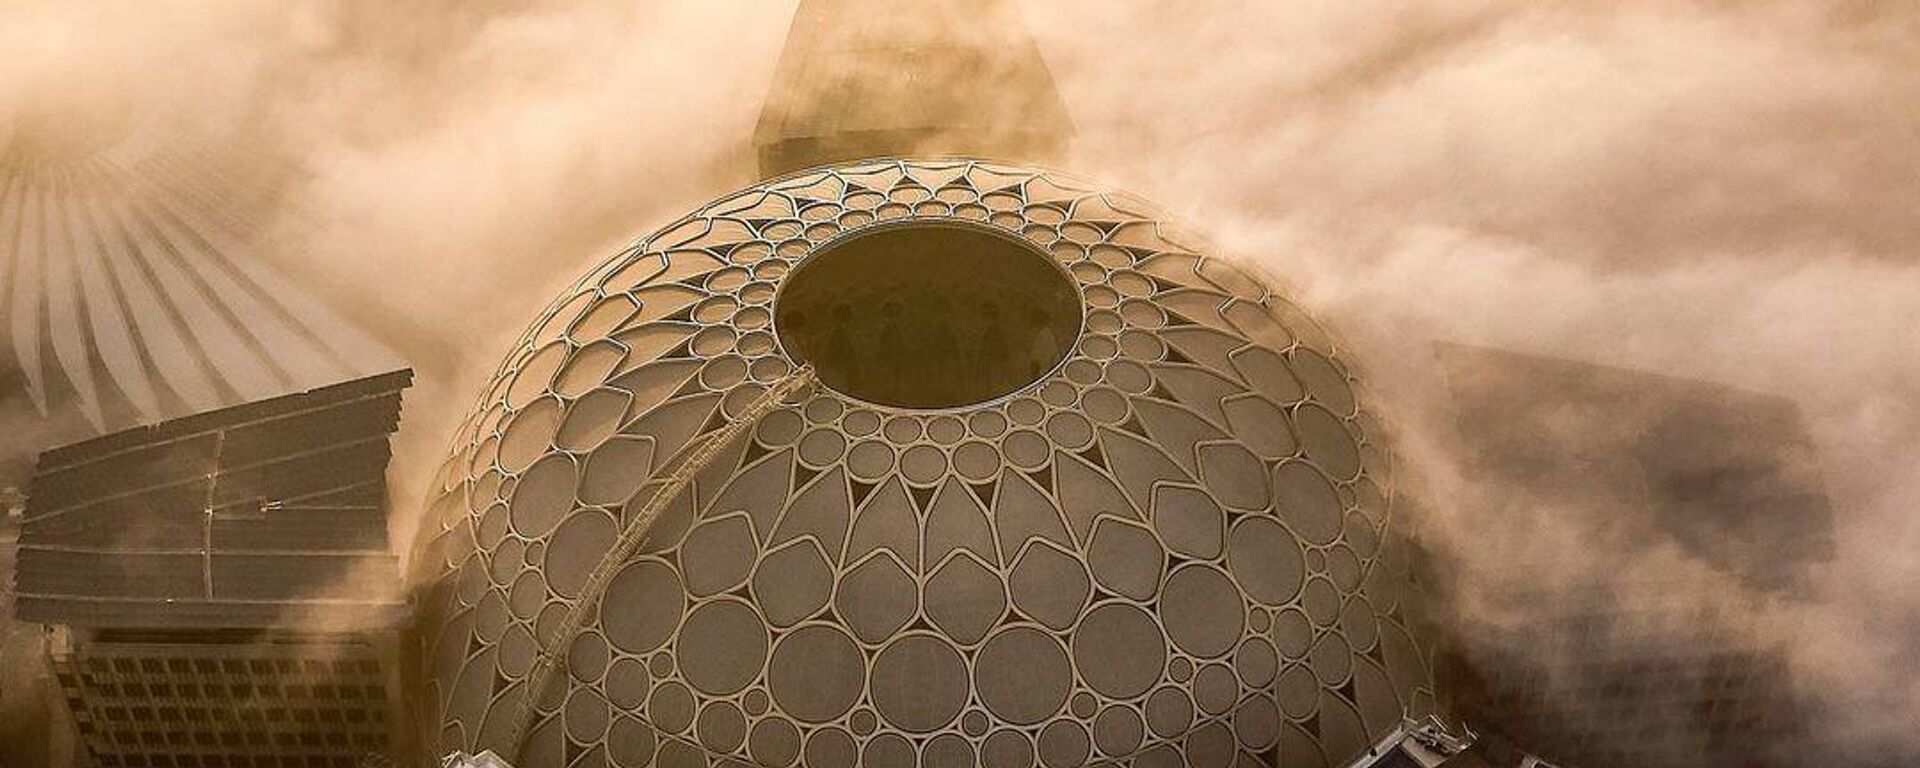 El Al Wasl Dome, la superficie de proyección de 360 grados más grande del mundo, en Dubái - Sputnik Mundo, 1920, 16.09.2021